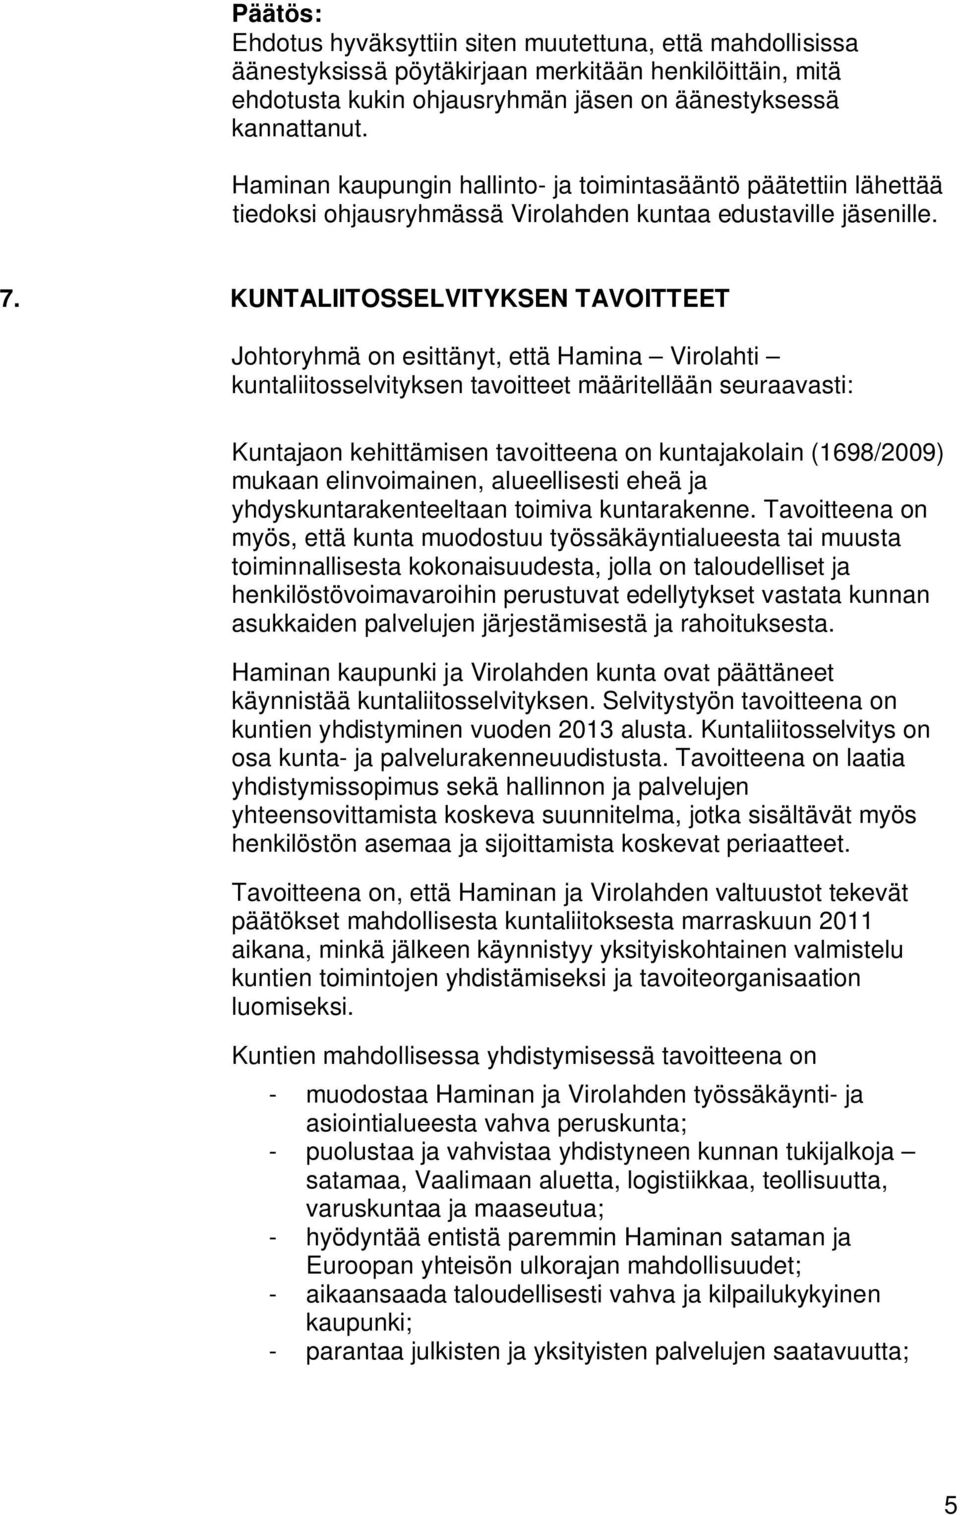 KUNTALIITOSSELVITYKSEN TAVOITTEET Johtoryhmä on esittänyt, että Hamina Virolahti kuntaliitosselvityksen tavoitteet määritellään seuraavasti: Kuntajaon kehittämisen tavoitteena on kuntajakolain